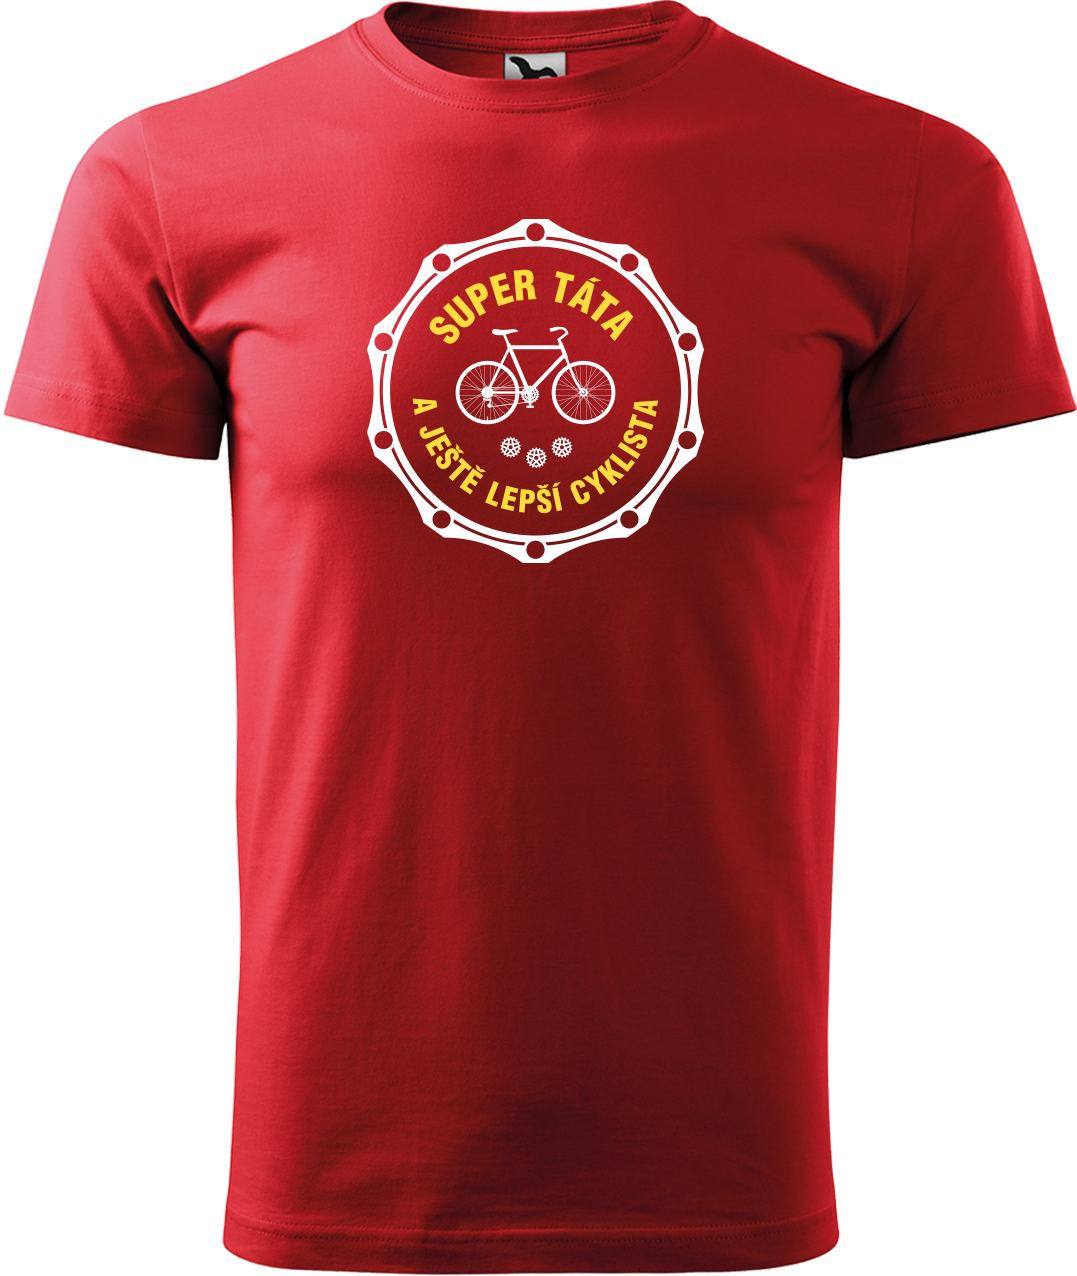 Pánské tričko pro cyklistu - Super táta a ještě lepší cyklista Velikost: S, Barva: Červená (07)